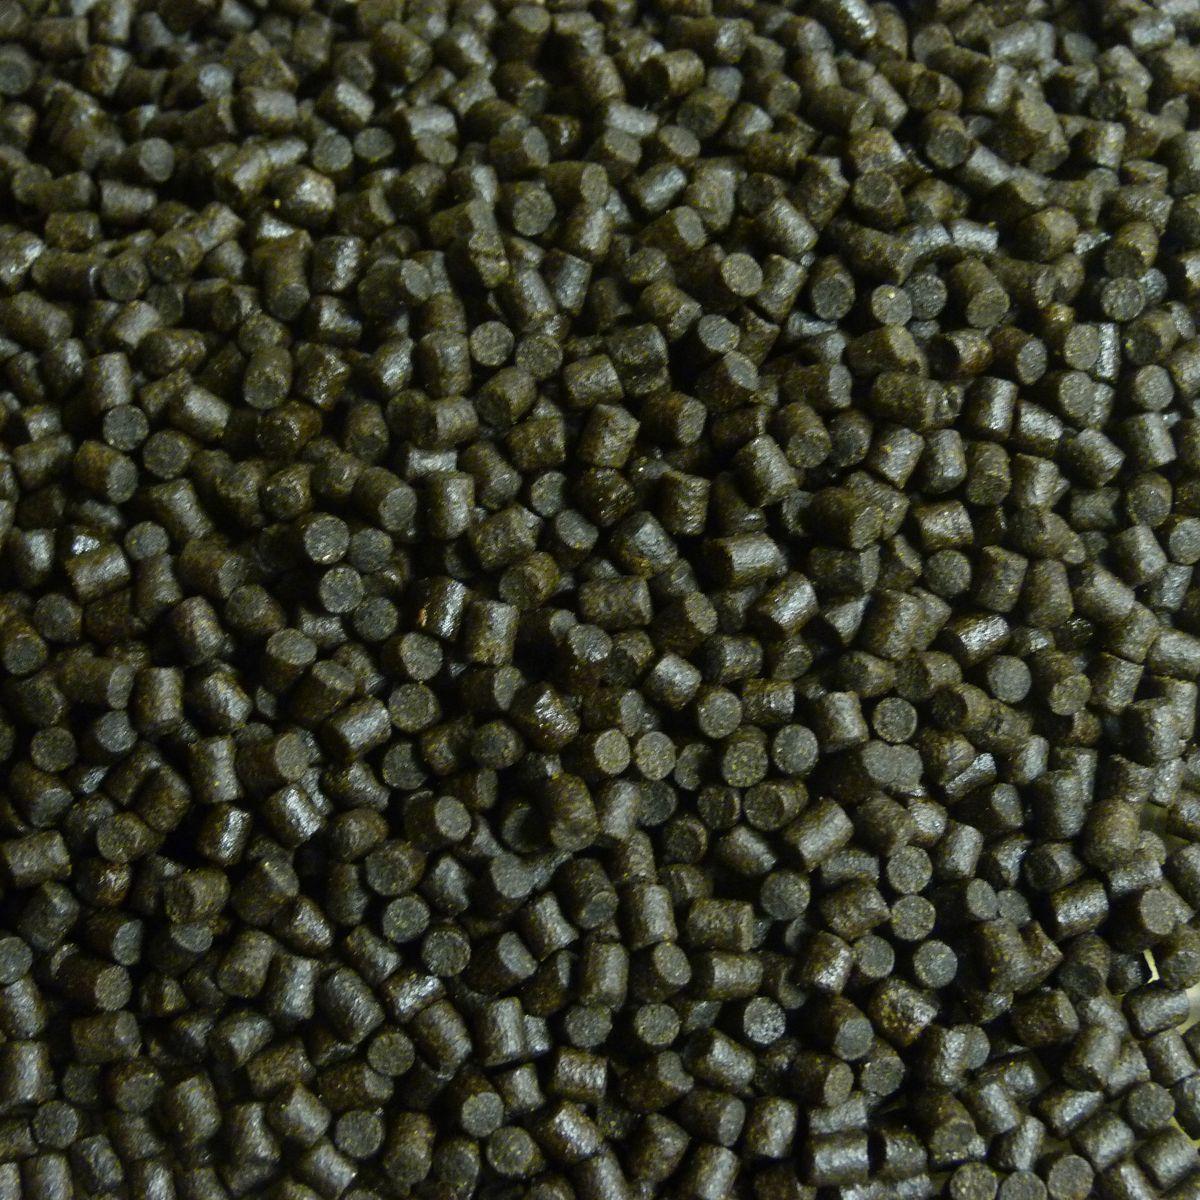 Coppens Halibut pellets | 20 mm